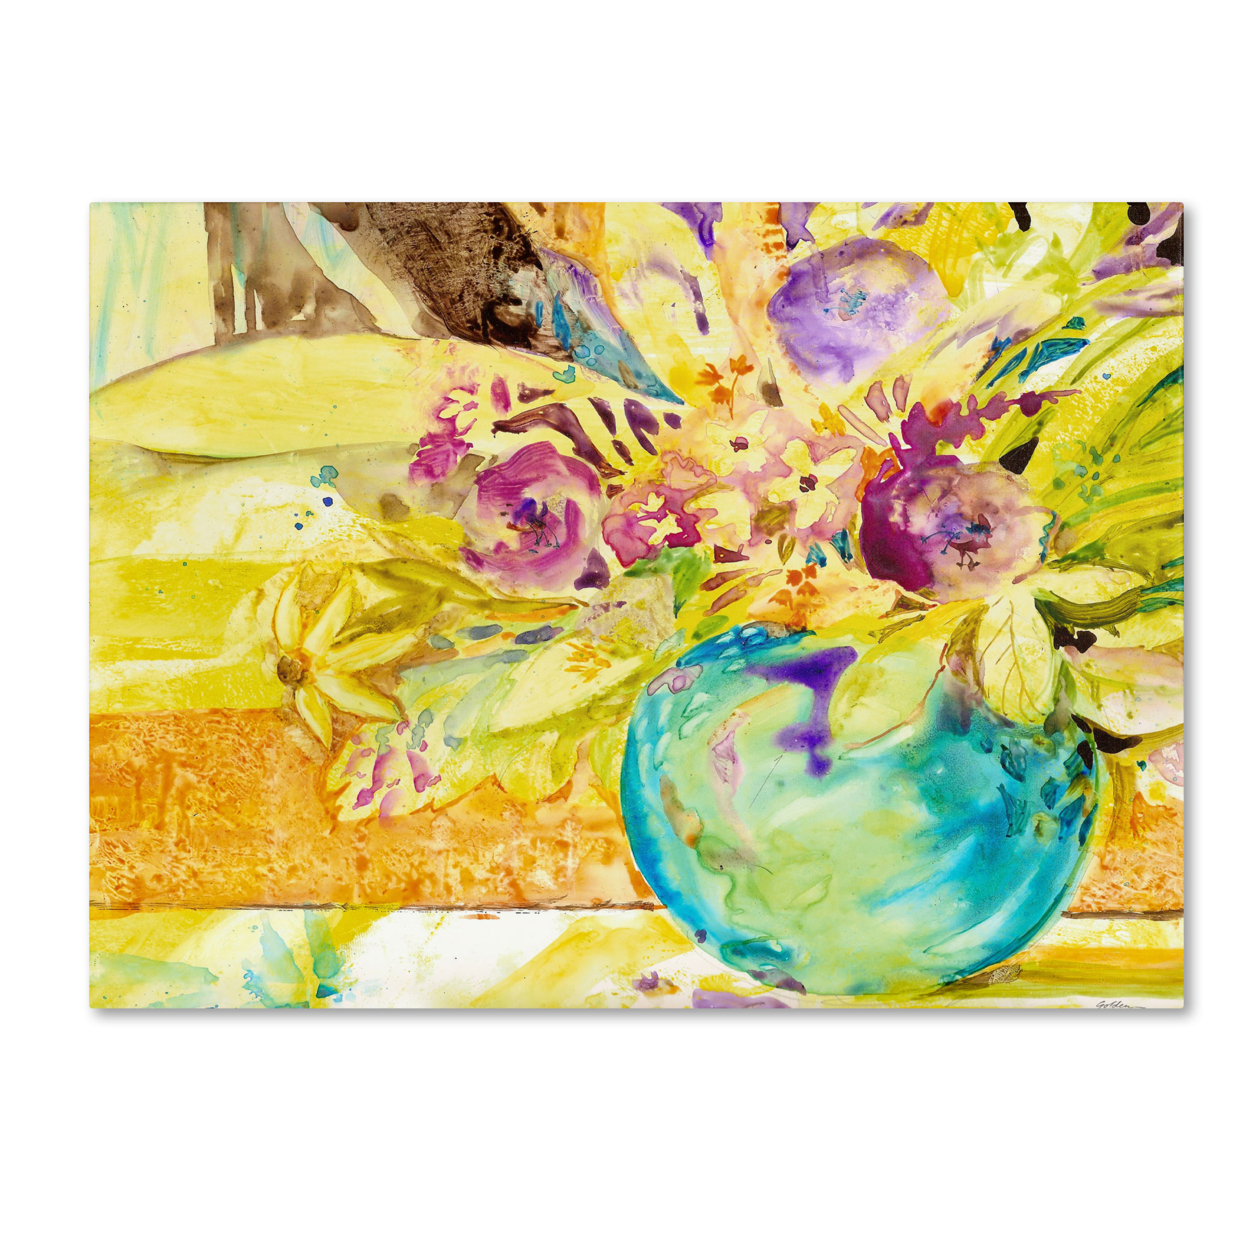 Sheila Golden 'The Aqua Vase' Canvas Art 18 X 24